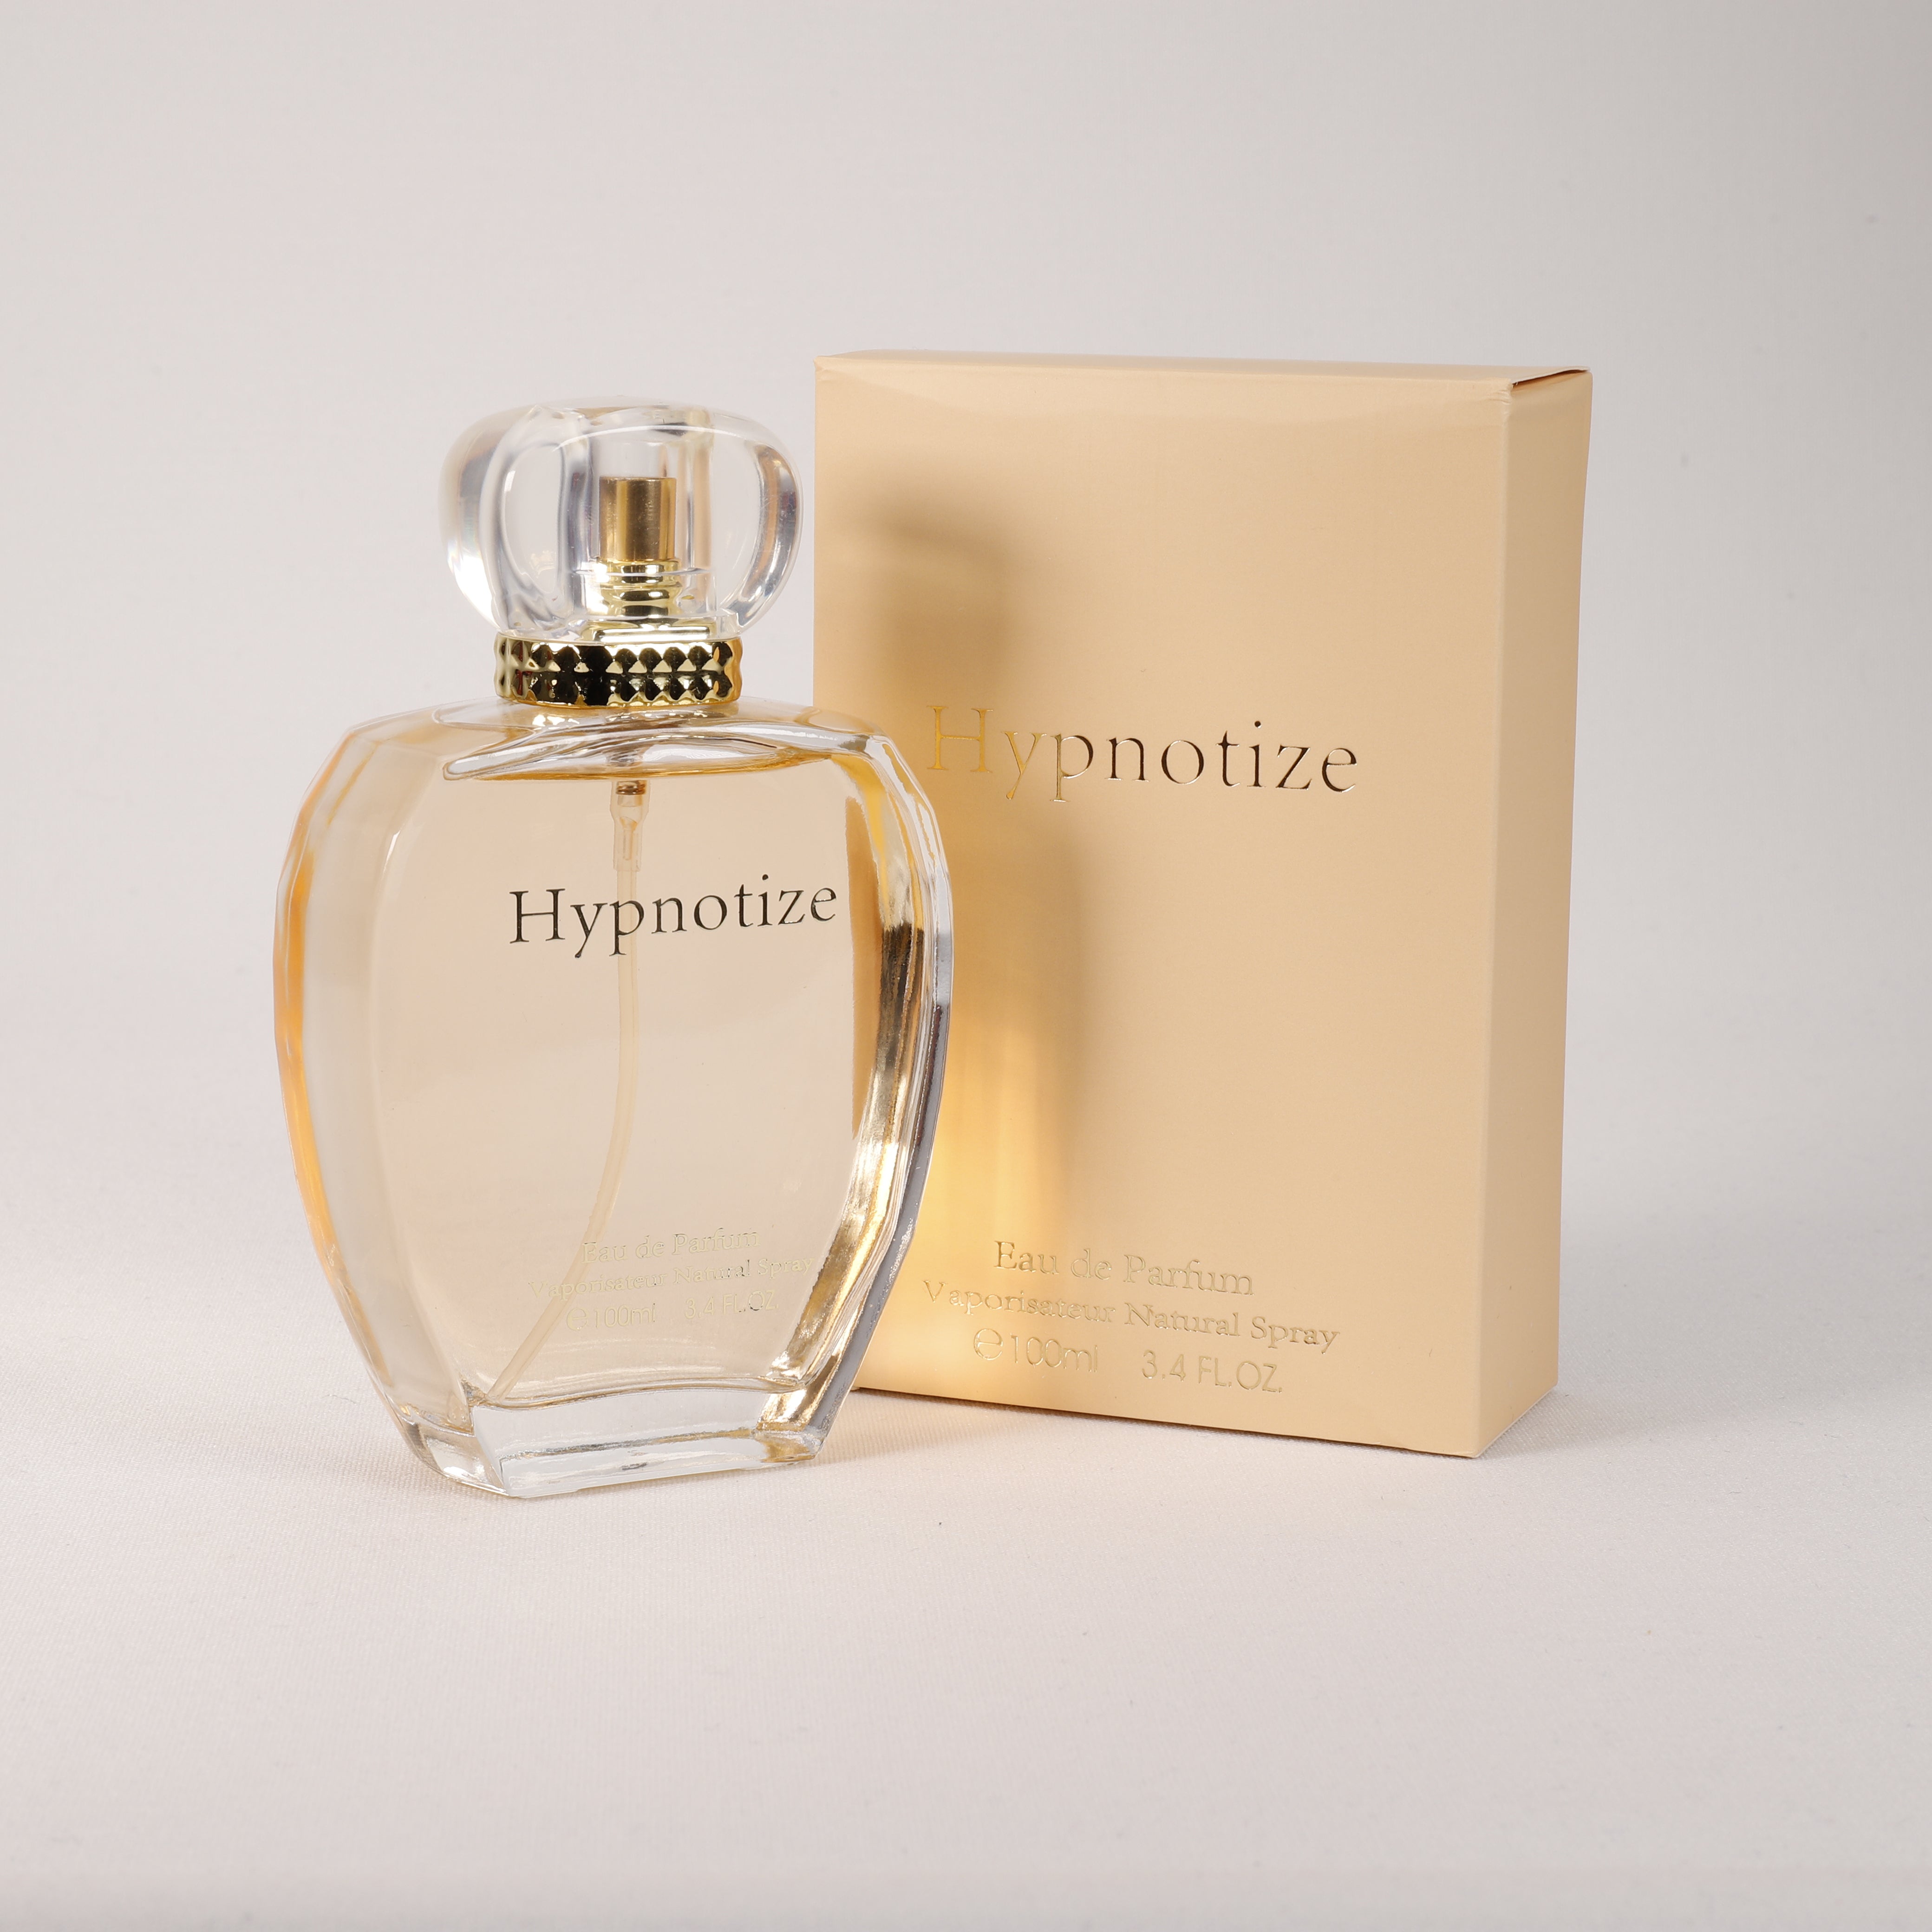 Hypnotize für Damen, Vaporizer mit natürlichem Spray, 100 ml, Duft, Parfum, TOP Parfüm, NEU OVP